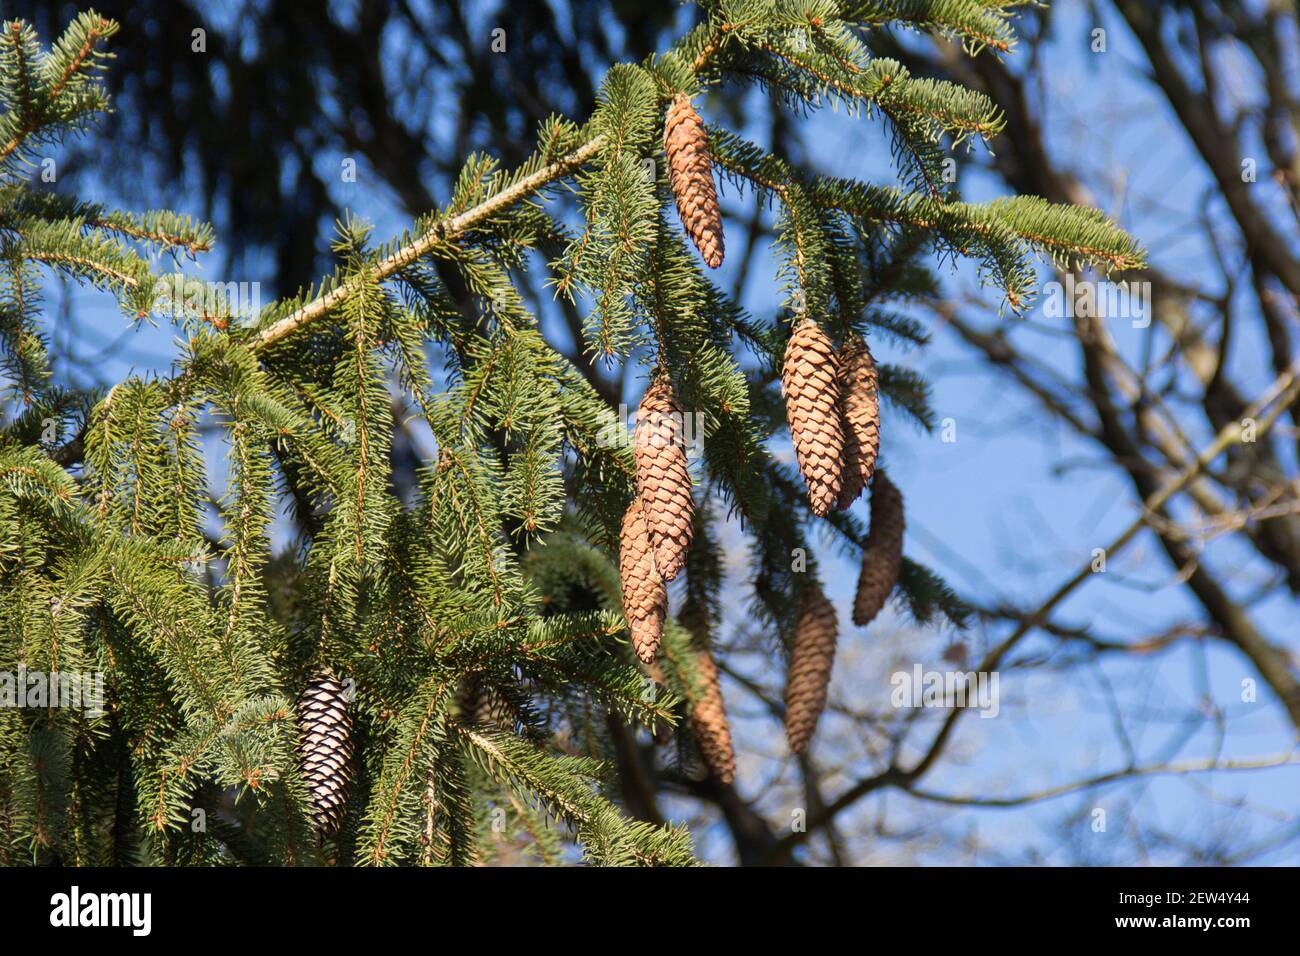 Nadelholz auf Nadelbaum vor blauem Himmel. Nahaufnahme von Pinecones, die am Nadelzweig hängen. Stockfoto